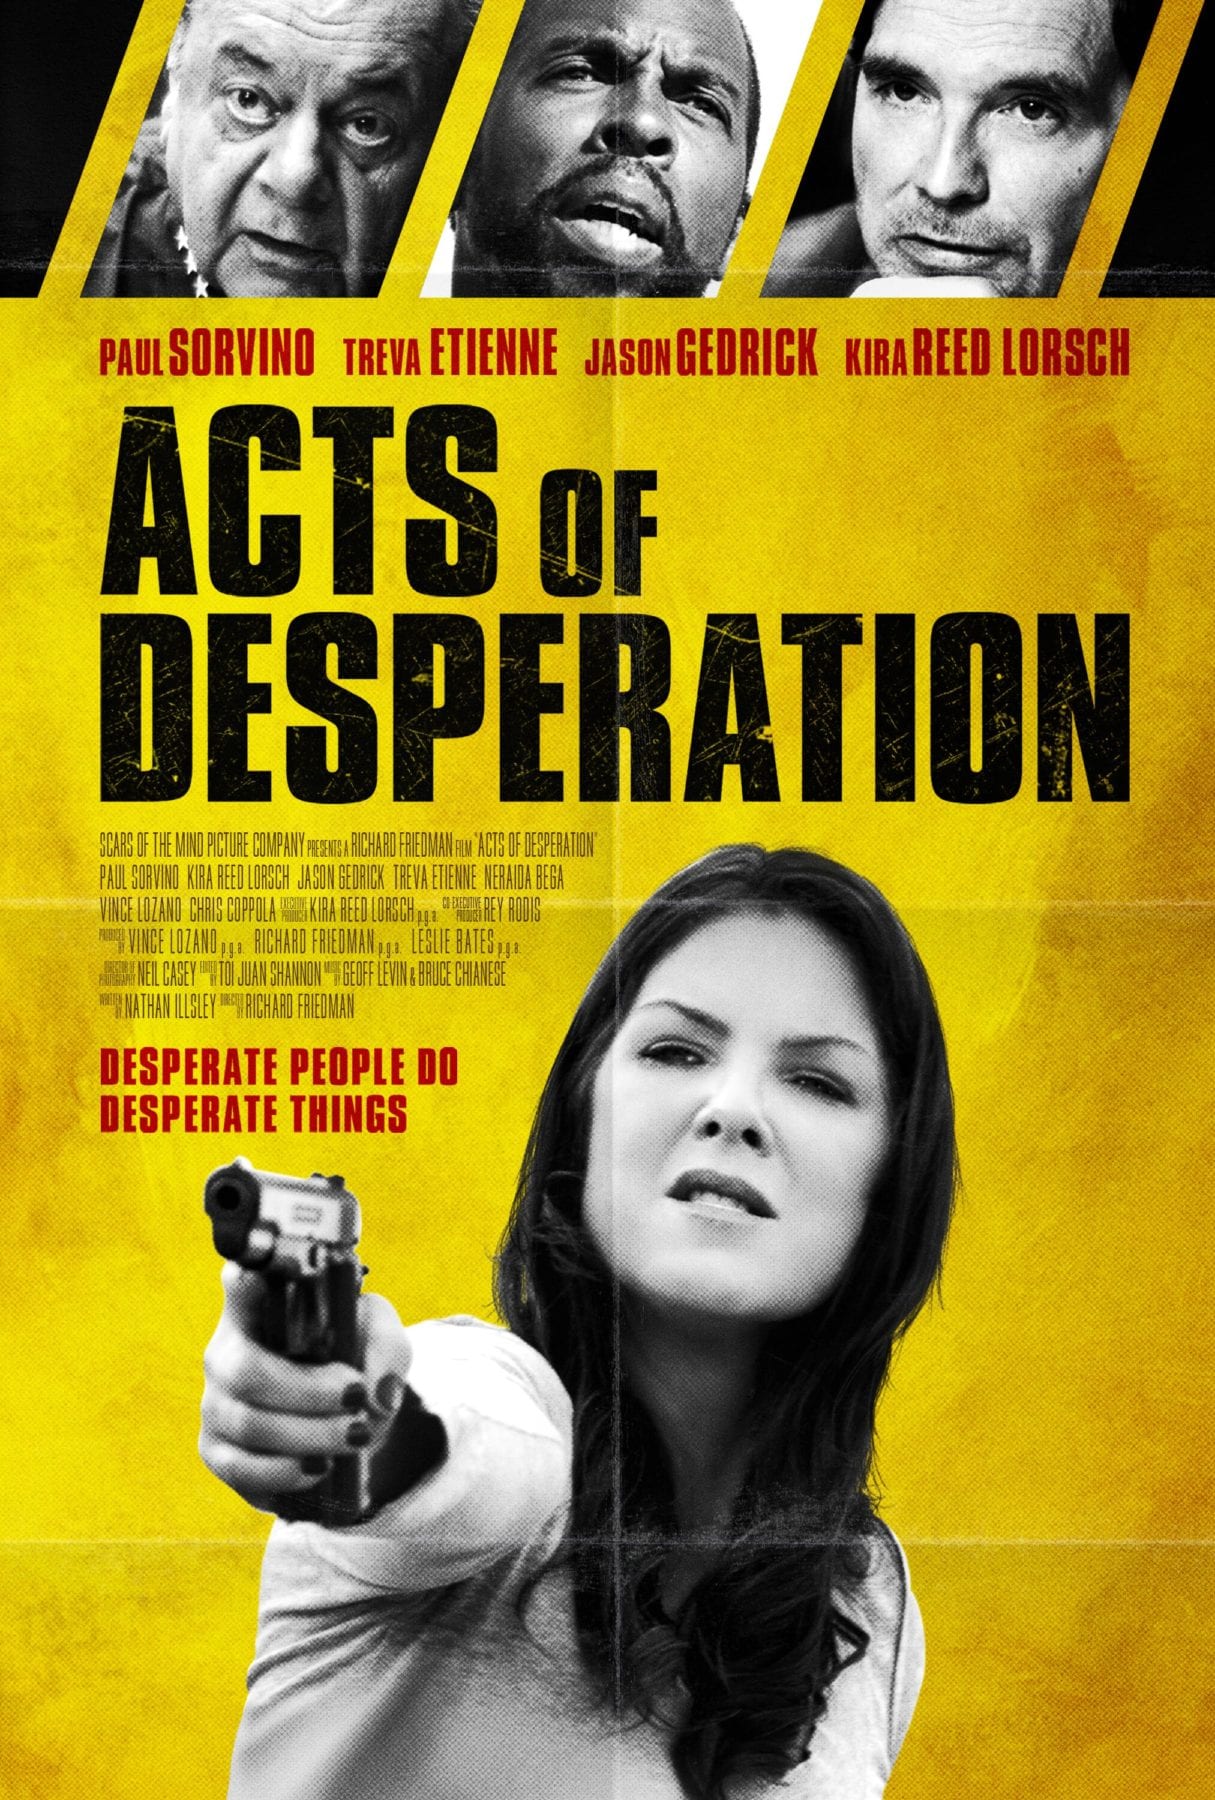 Clip exclusivo del thriller Acts of Desperation